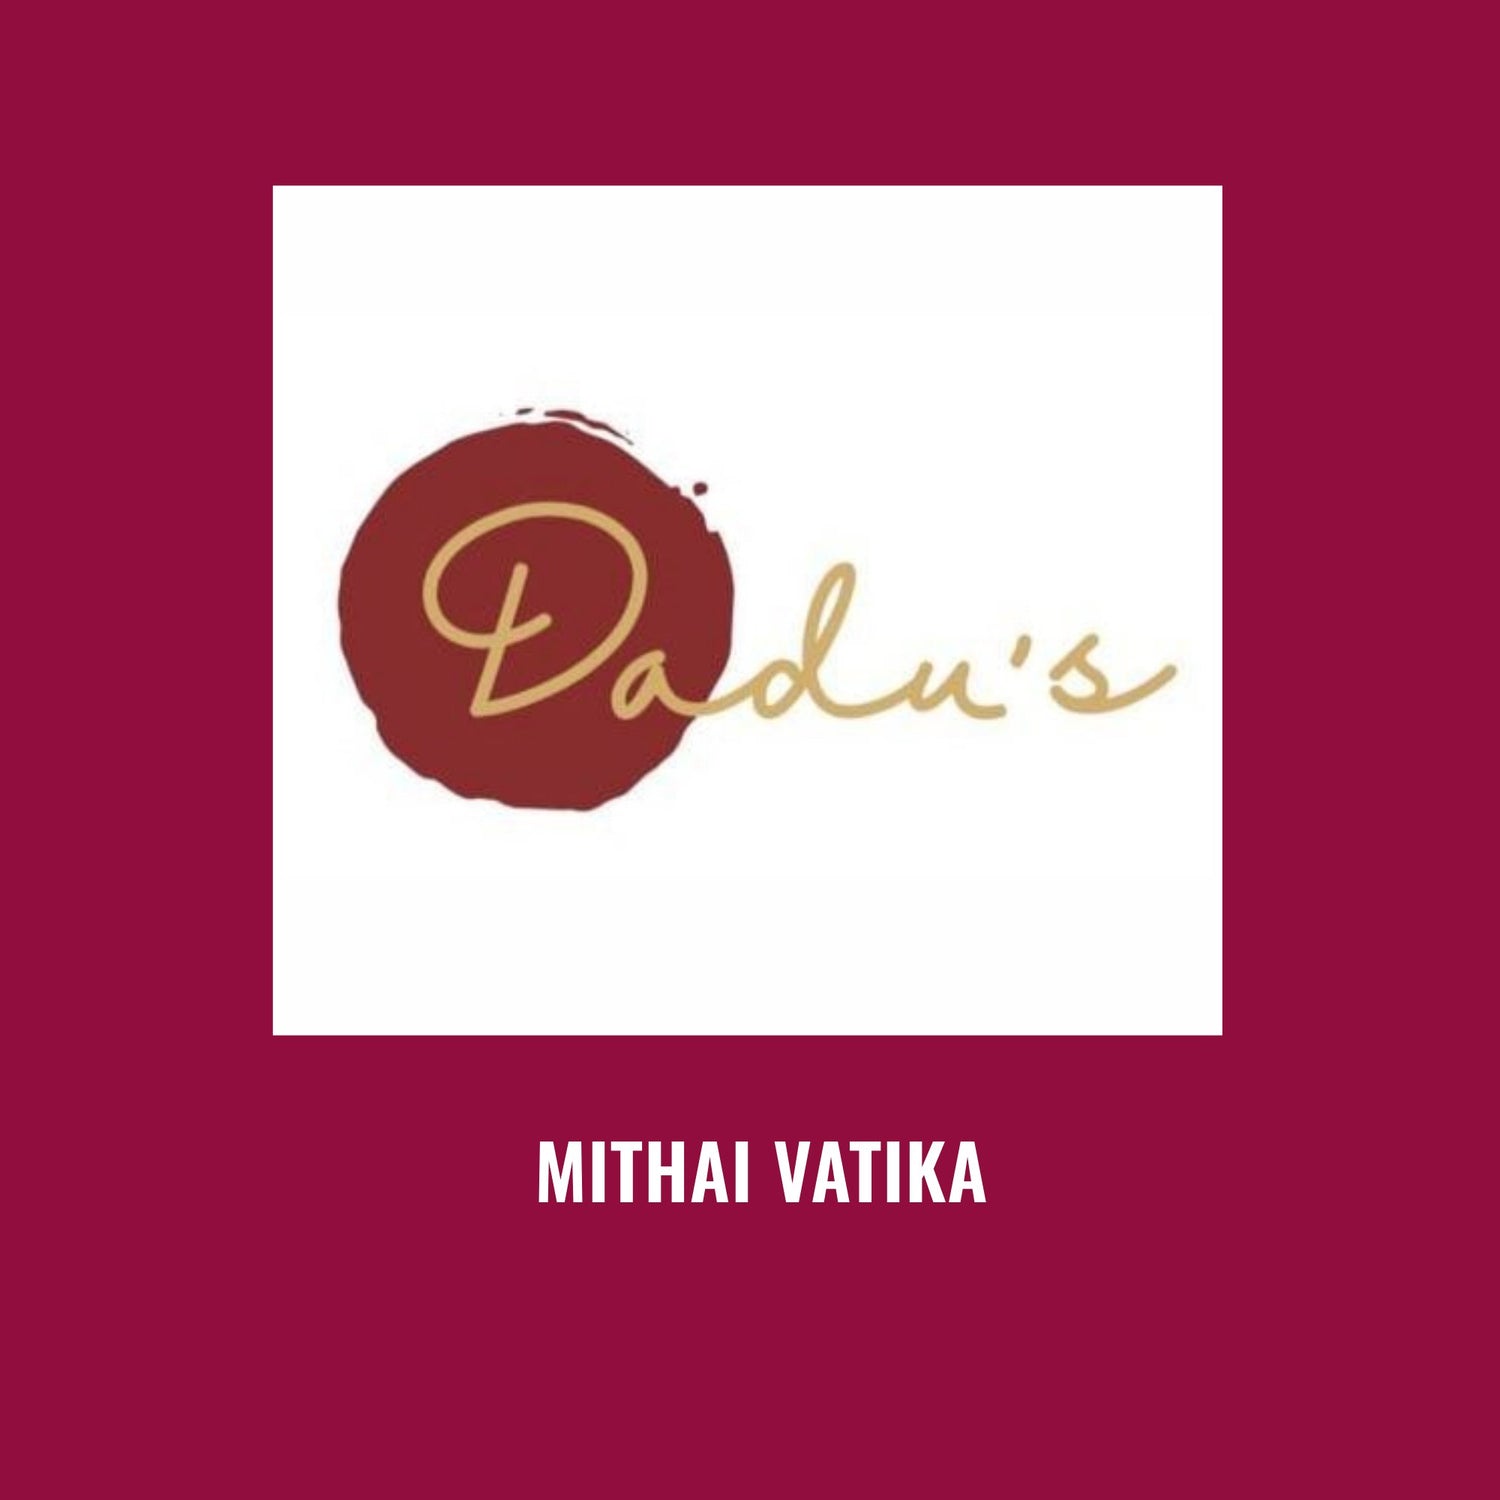 Dadu's Mithai Vatika